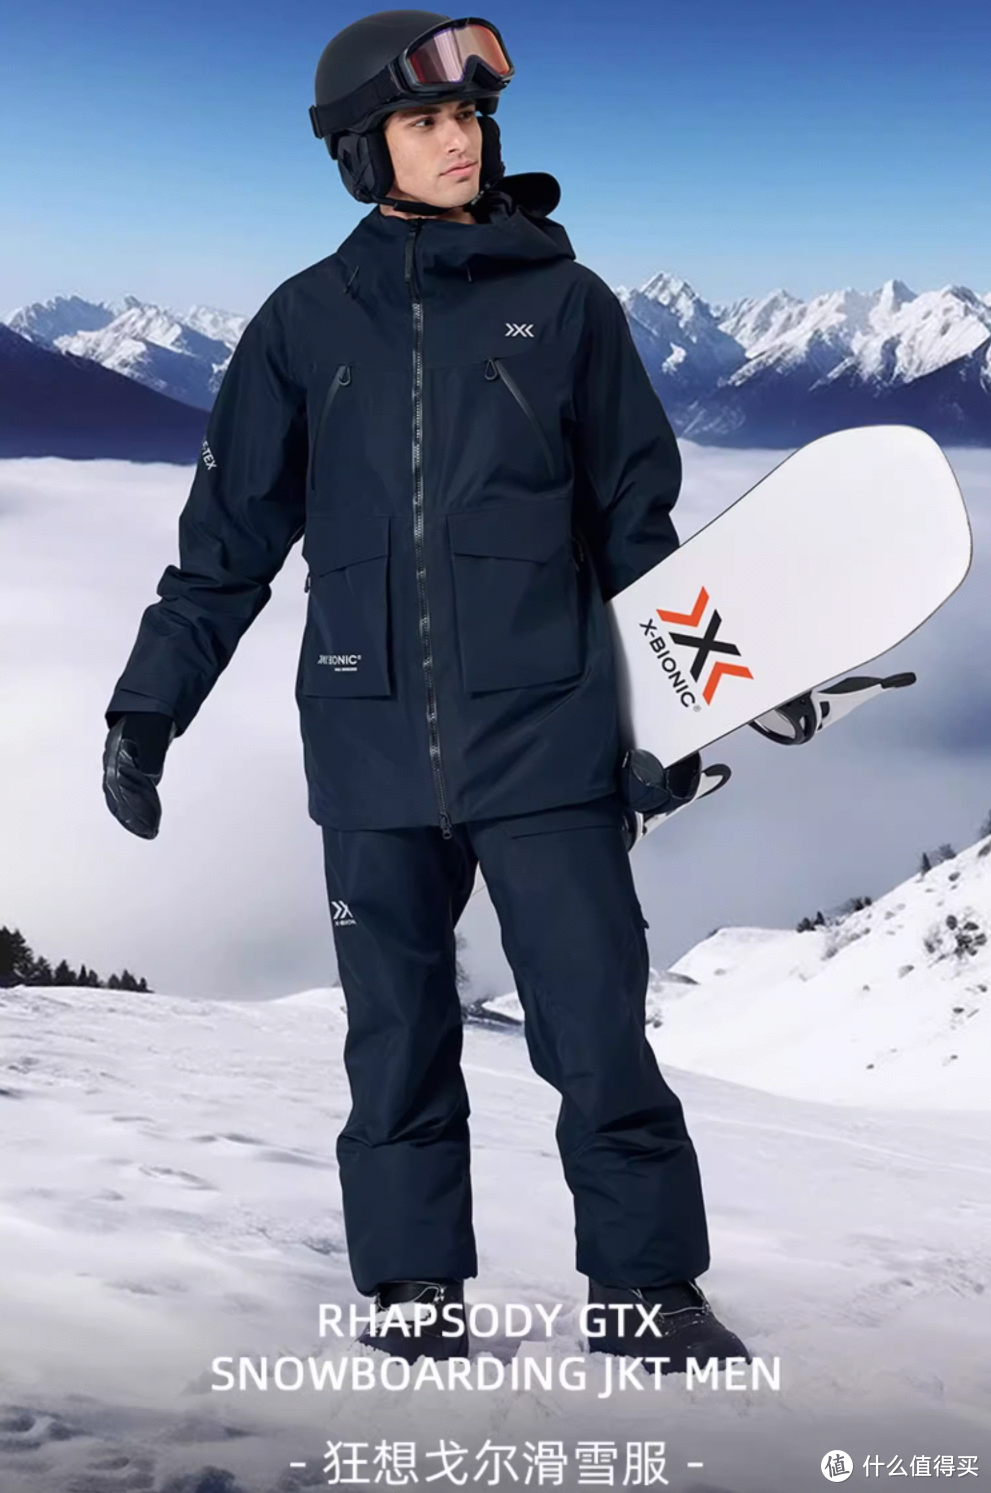 X-BIONIC狂想戈尔滑雪服，让滑雪更畅快！